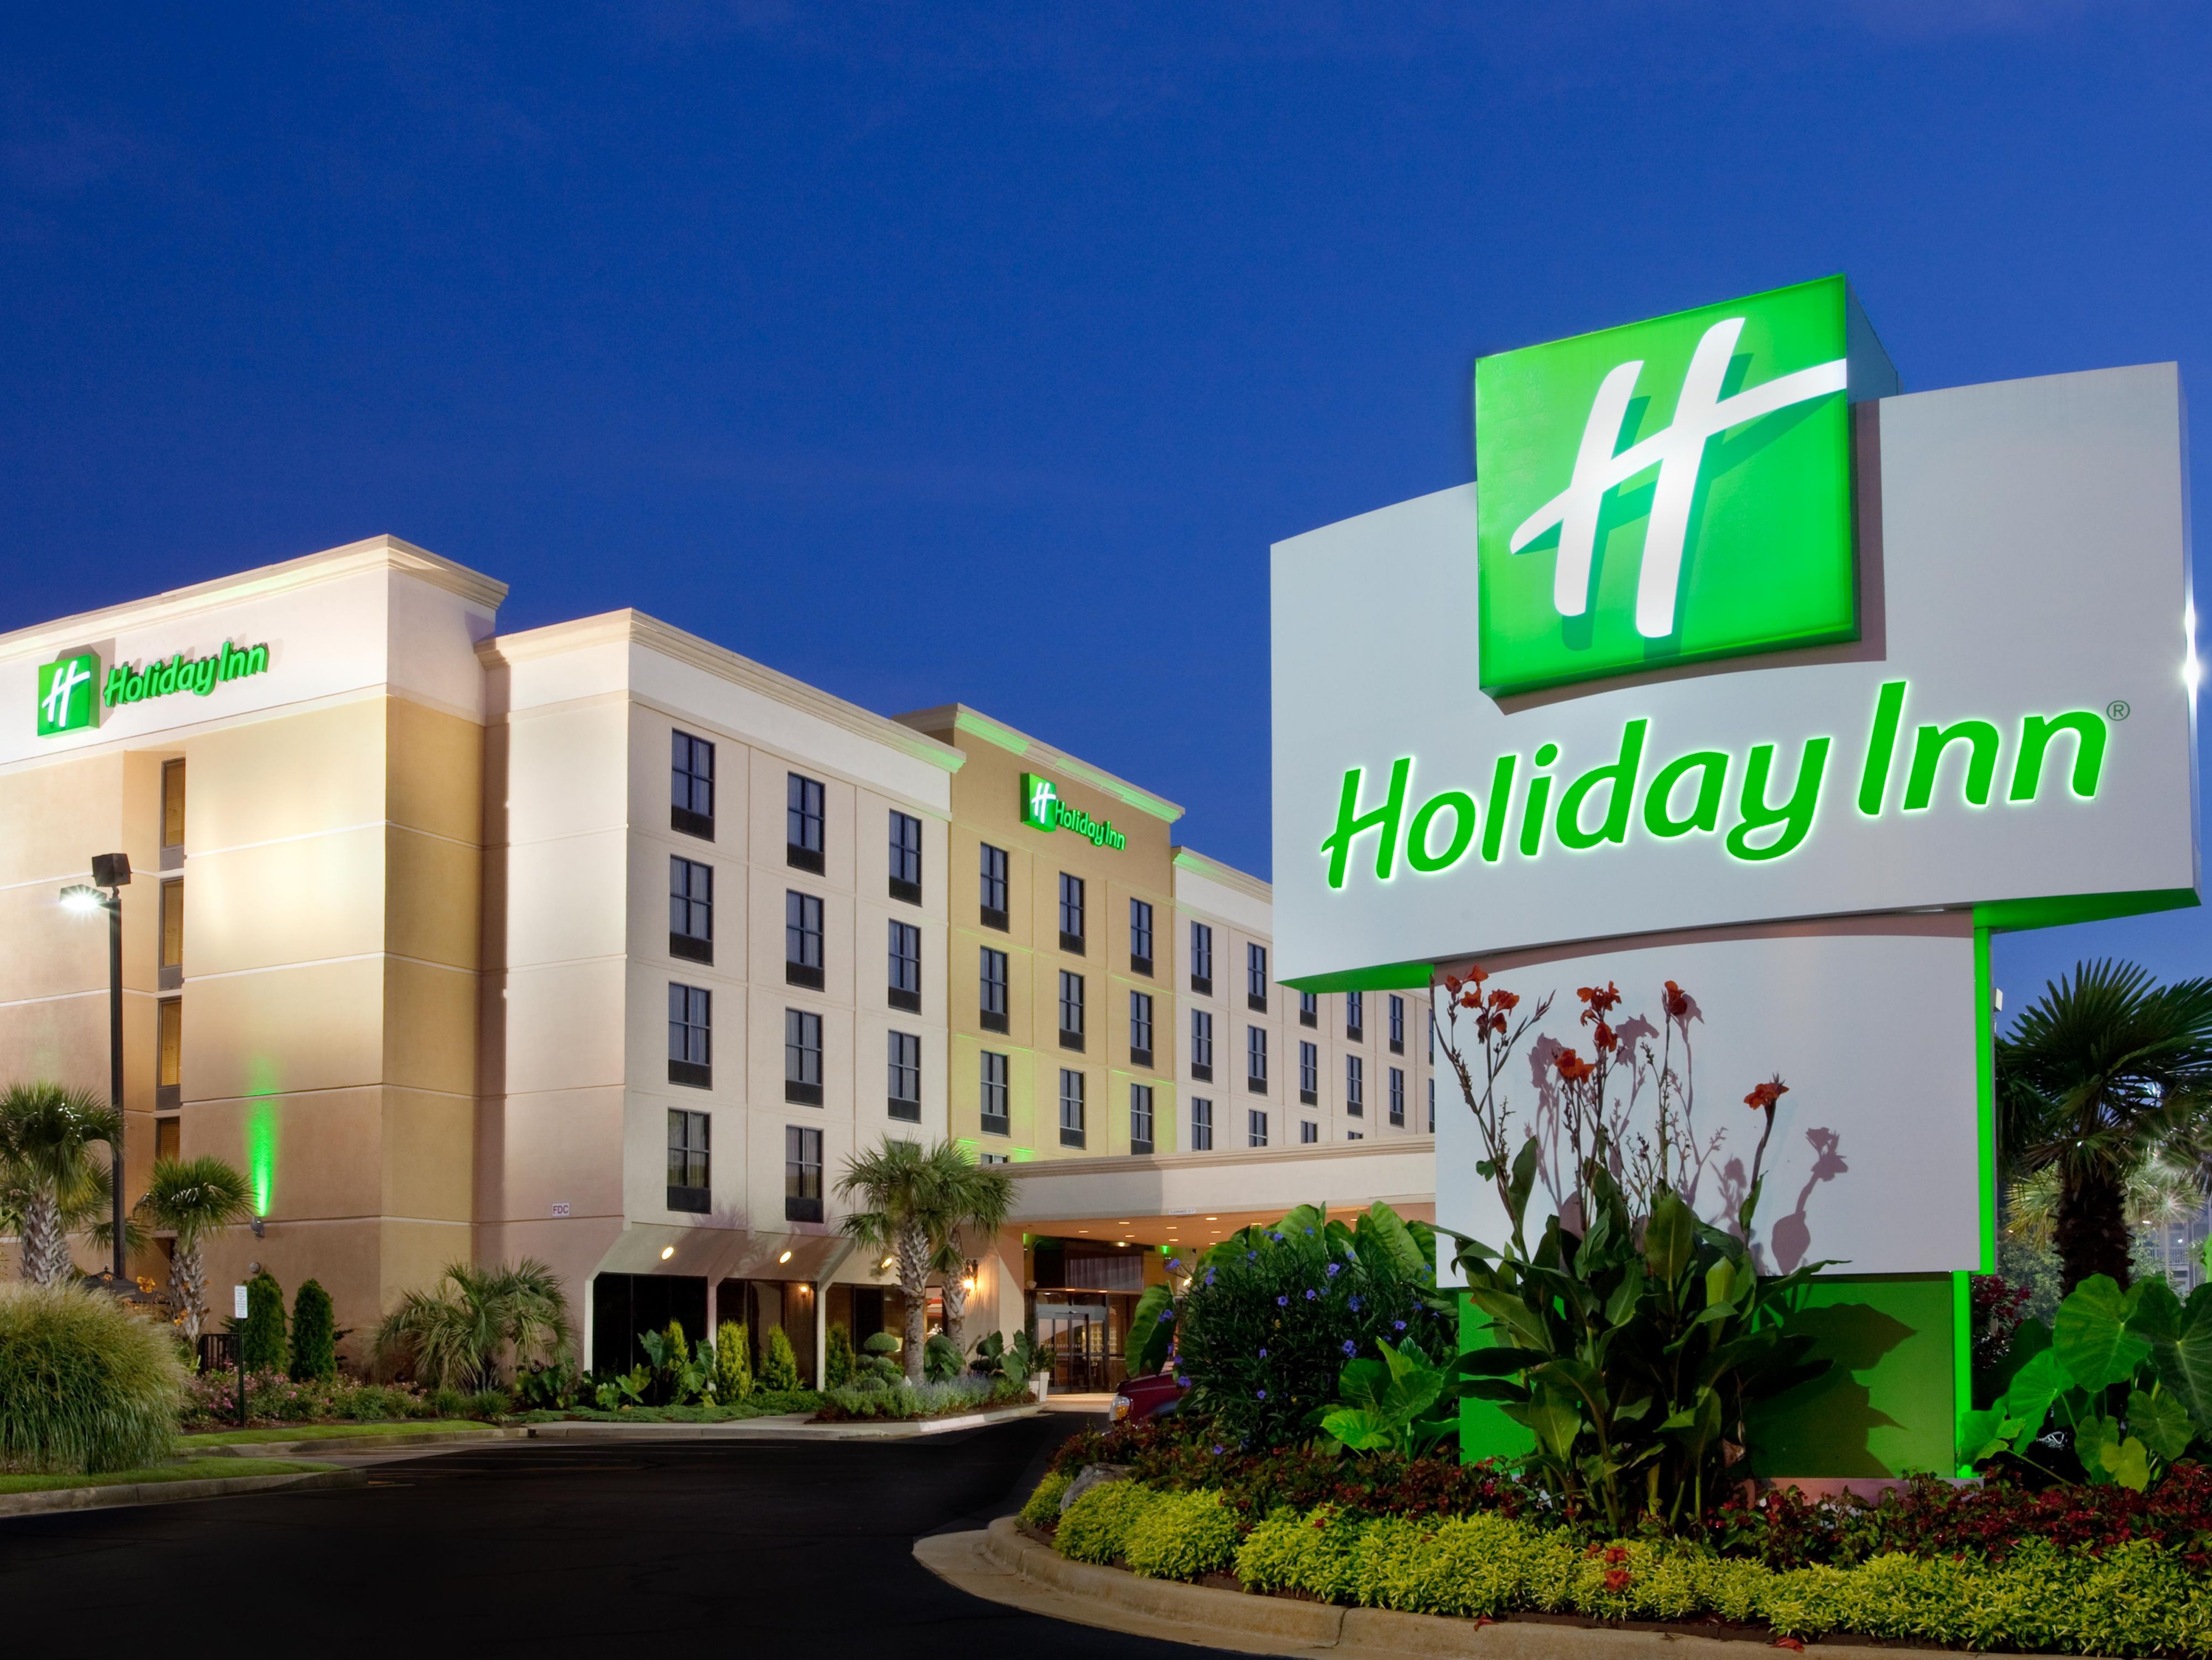 Holiday Inn Atlanta-Northlake - Hotel Reviews & Photos